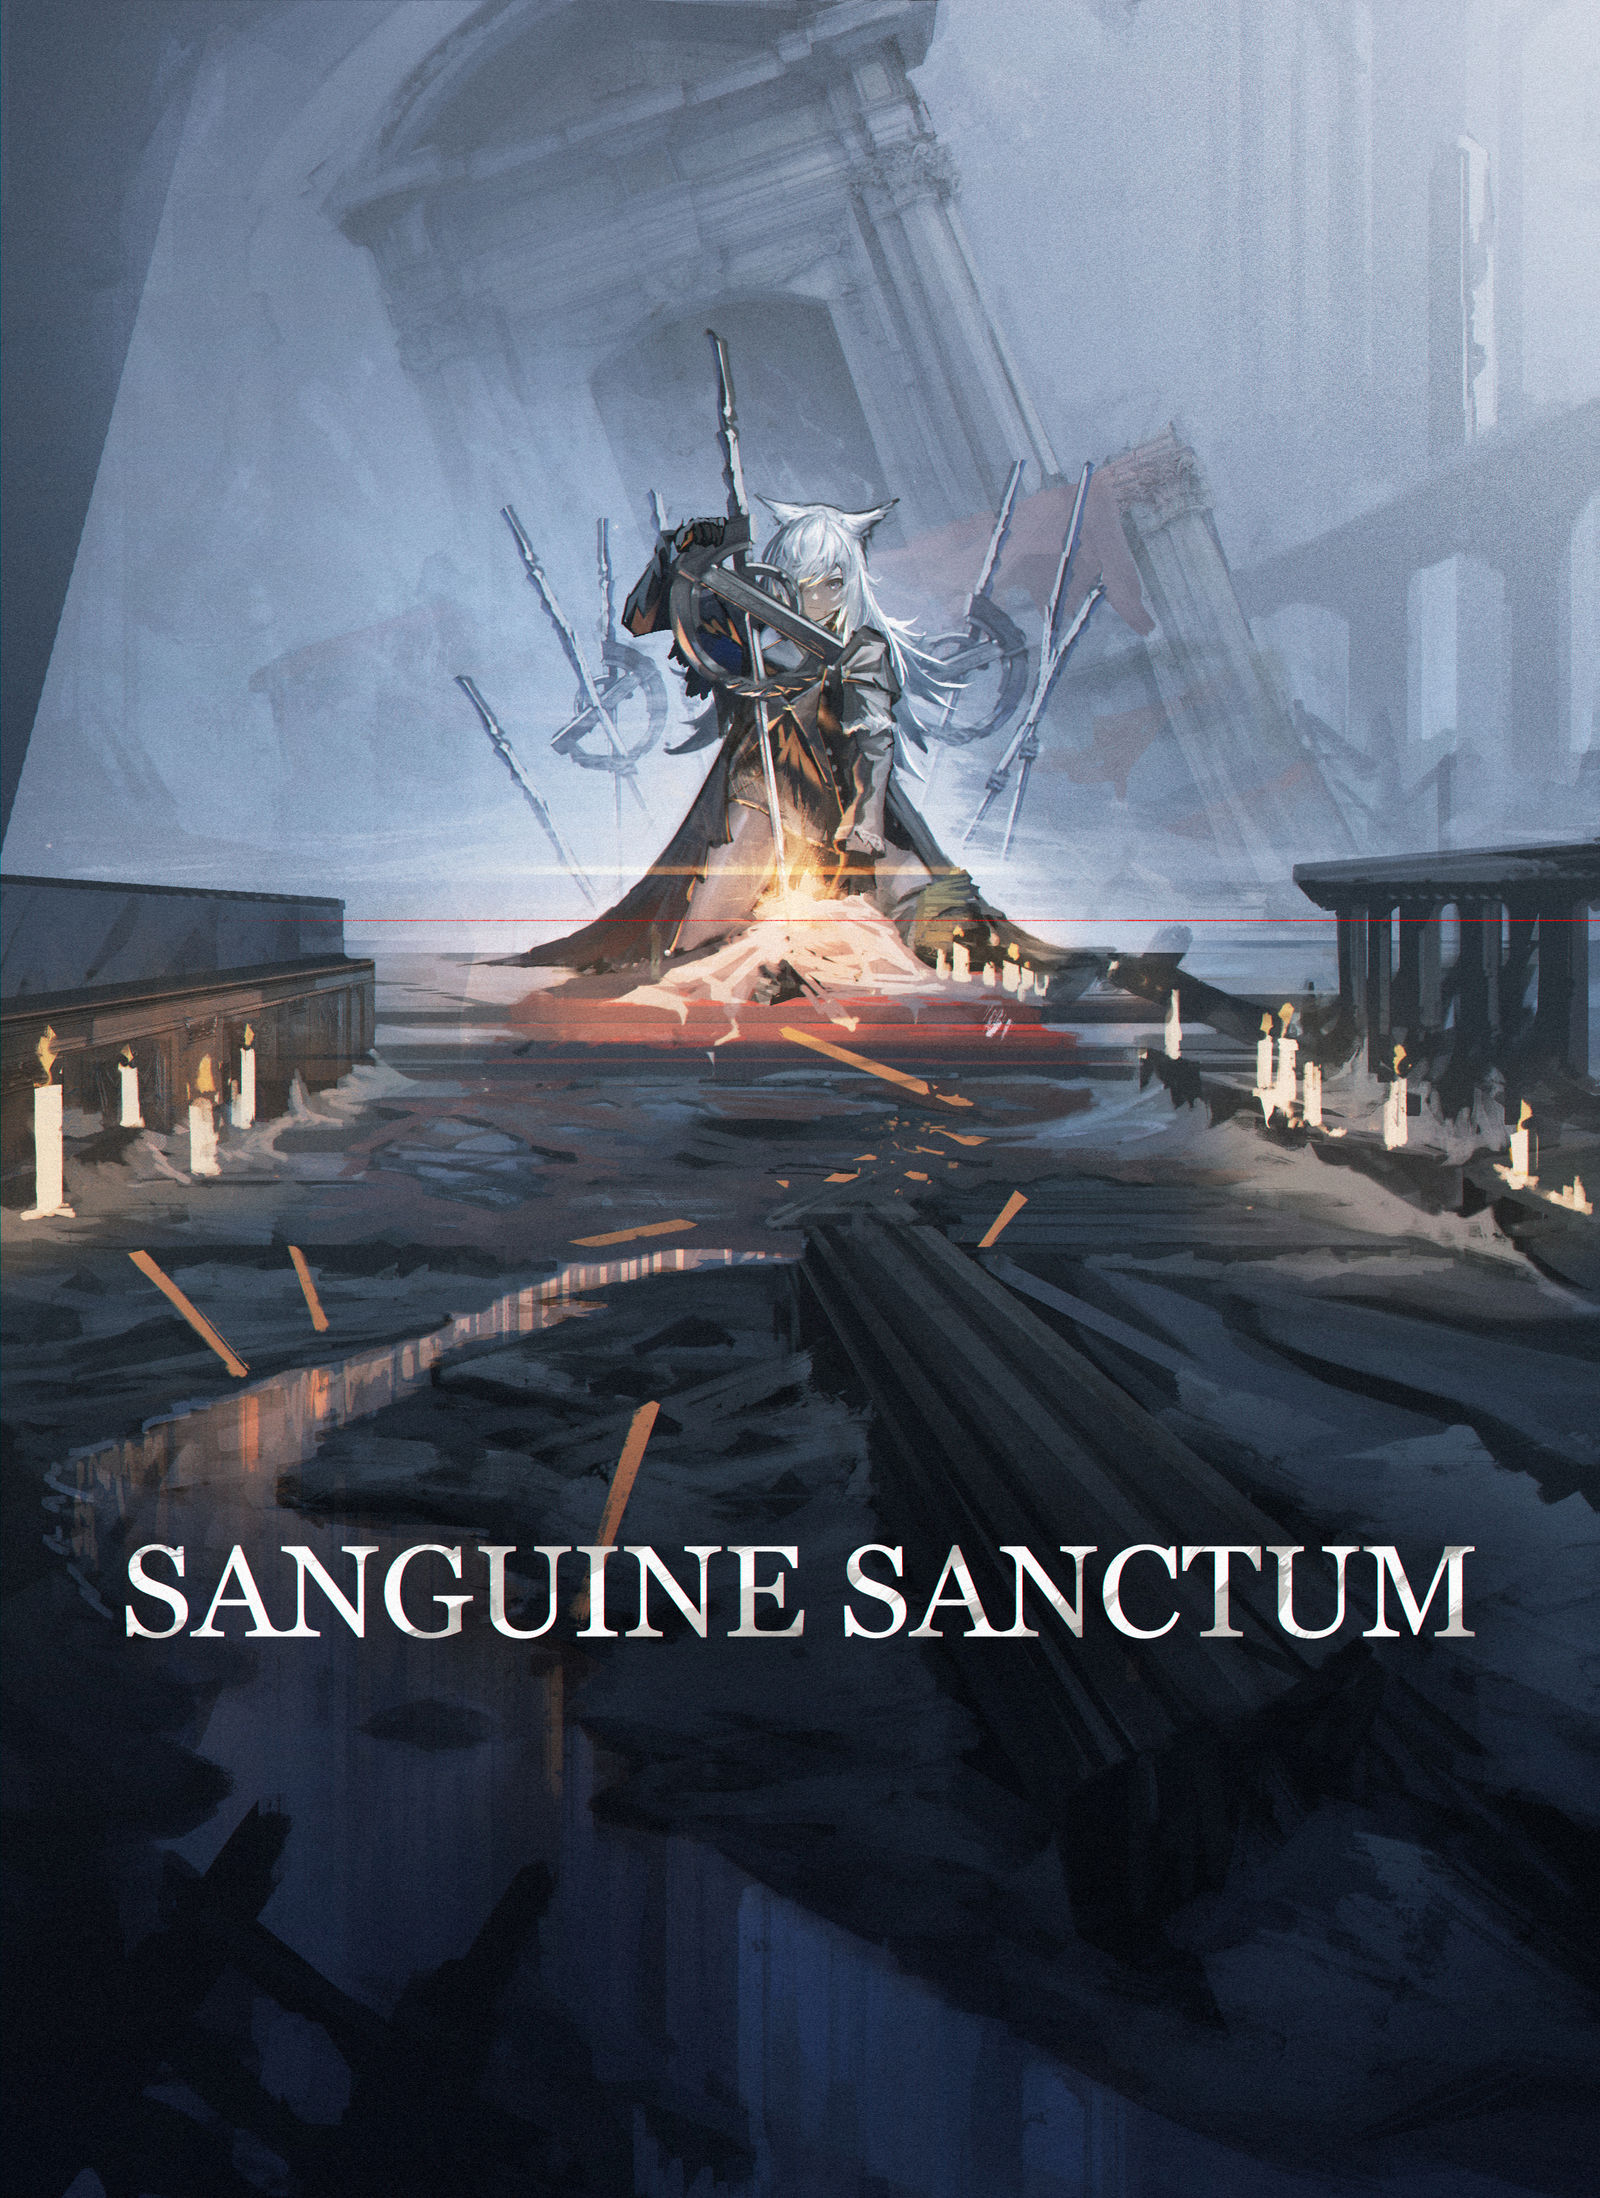 Sanguine sanctum